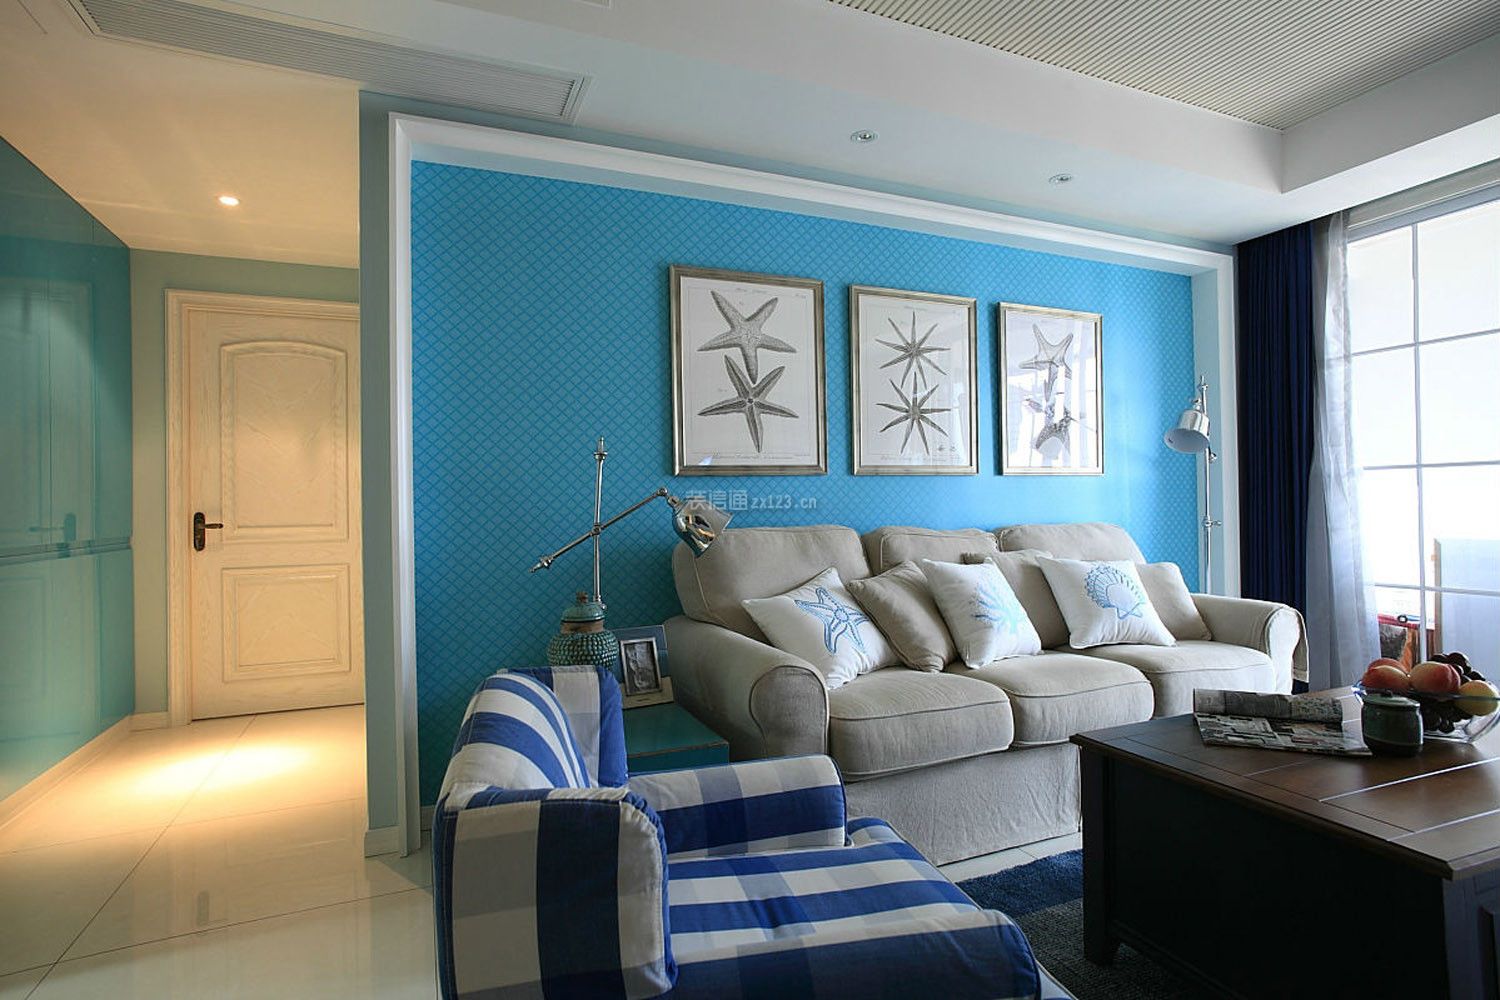 客厅沙发效果 客厅沙发颜色效果图 